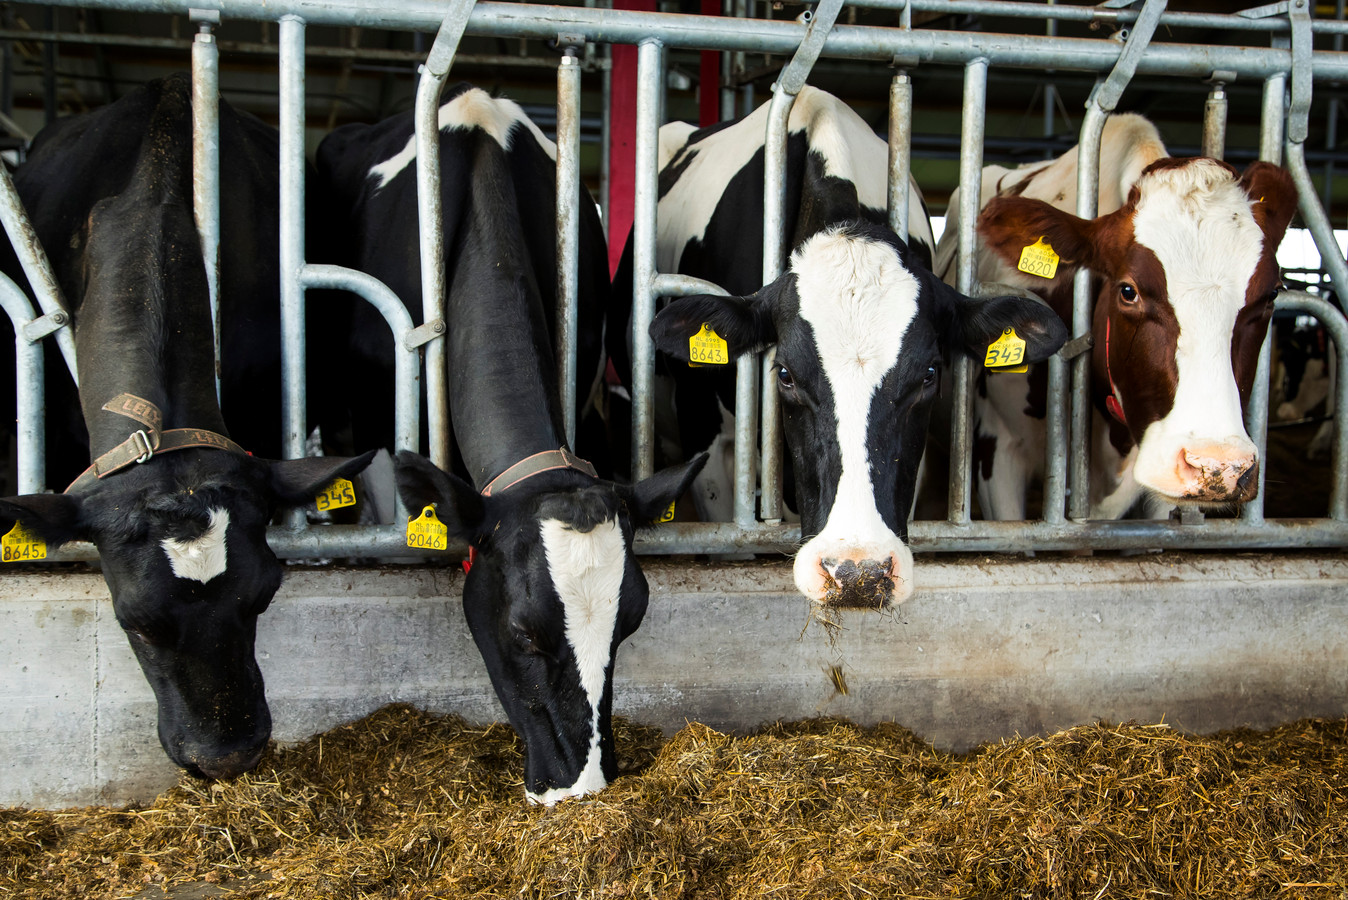 2016-11-17 16:01:37 MUIDERBERG - Koeien in de stal bij een melkveehouderij. ANP XTRA KOEN SUYK